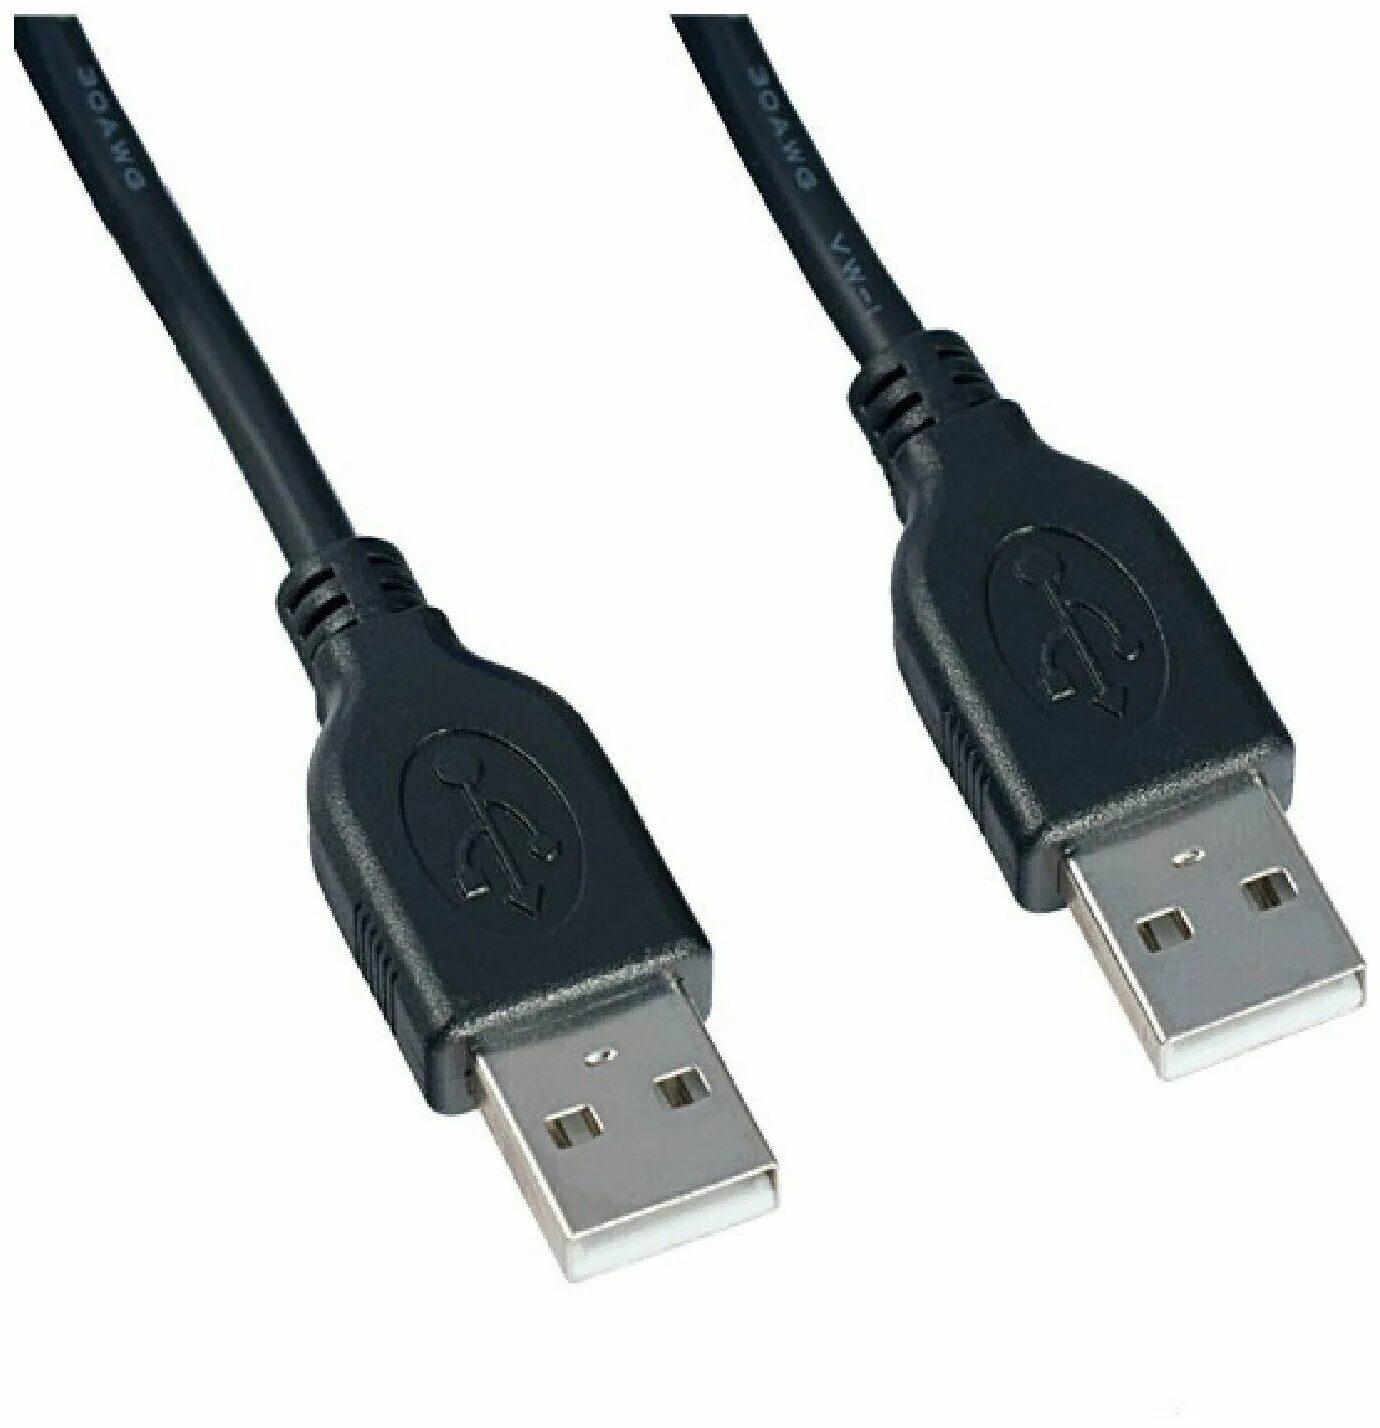 Usb a usb a 1м. Perfeo кабель USB3.0 A вилка - a вилка, длина 1,8 м. (u4601) (шт.). Perfeo (u4401) USB2.0 A вилка - а вилка 1.8 м. USB 2.0 кабель 1.8м Perfeo am-am (u4401). Кабель Perfeo USB2.0 A вилка - USB A вилка, 1.8 мeters (u4401).